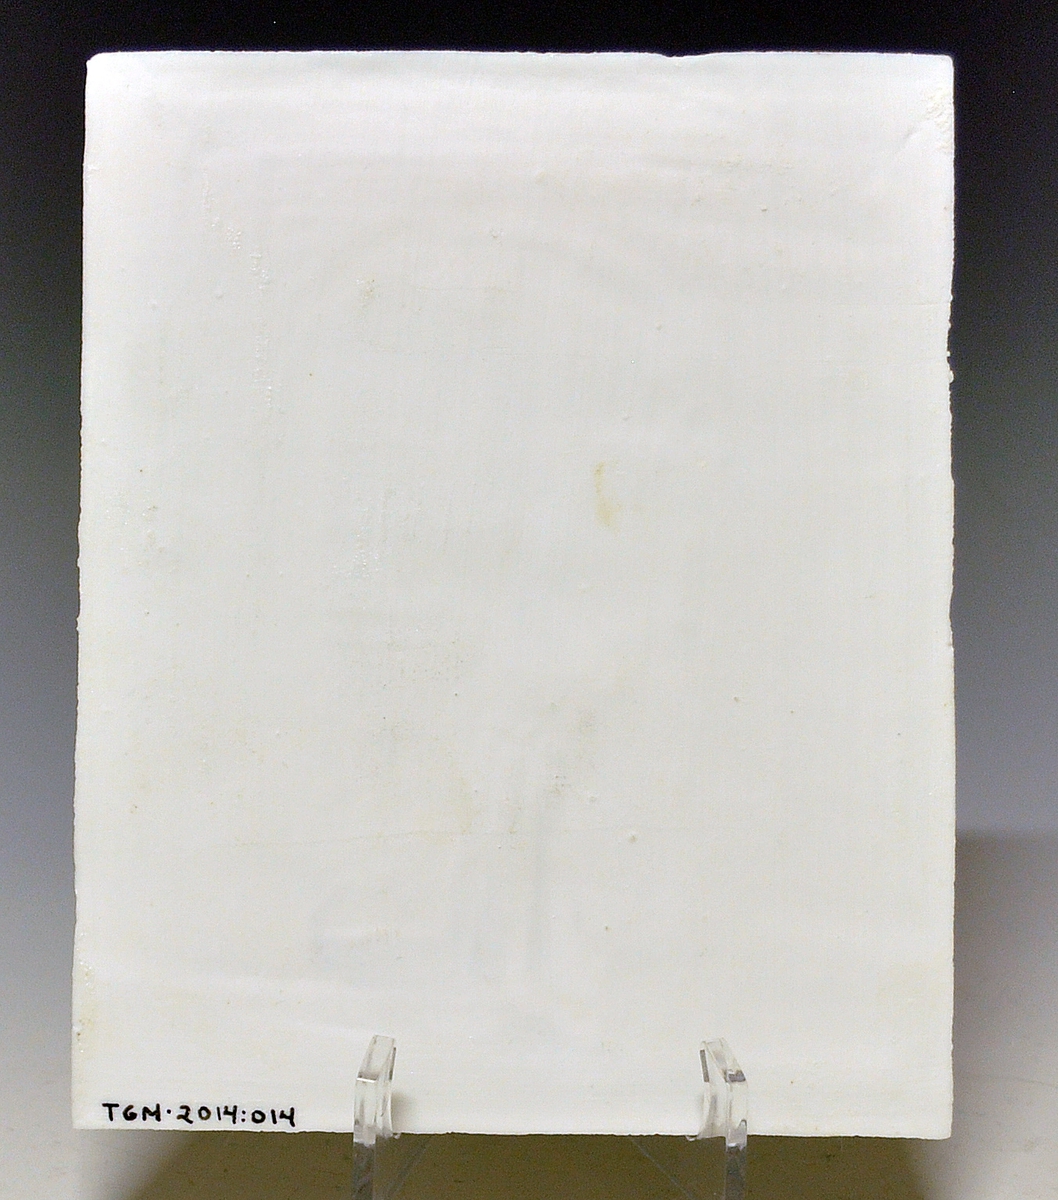 Litofani i porselen. Kalt lysbillede i priskuranten fra 1888. Motivet preget inn som relieff. Uglasert. Motiv: Figur i døråpning. Utsikt mot bygning og landskap.
Ustemplet.